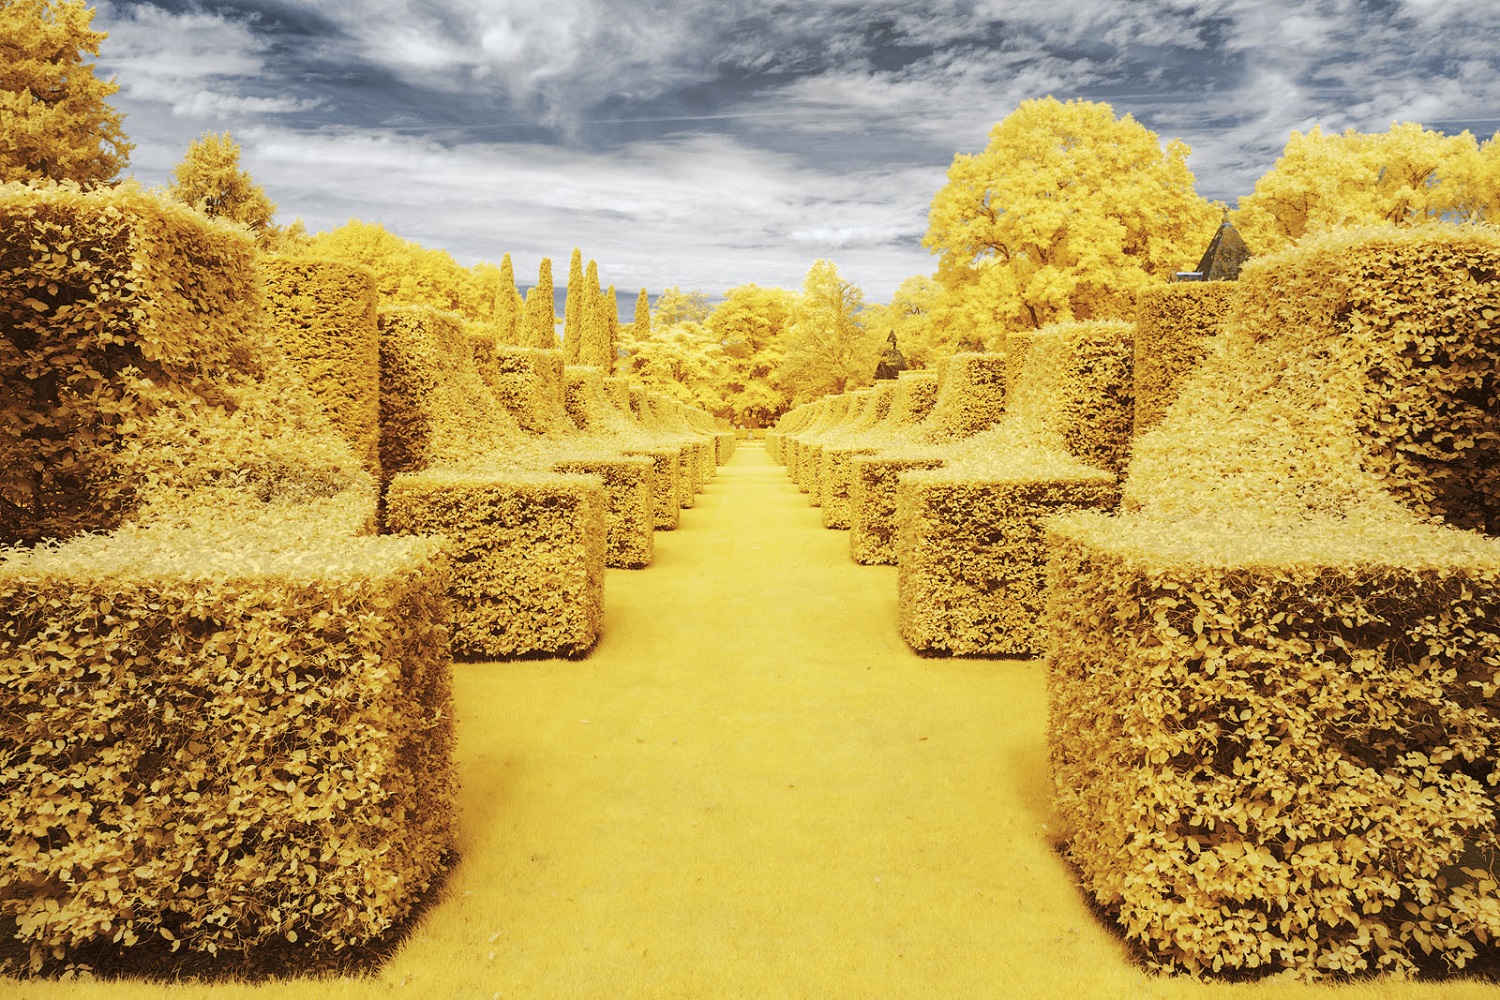 Pierre-Louis Ferrer Captures Nature in Yellow